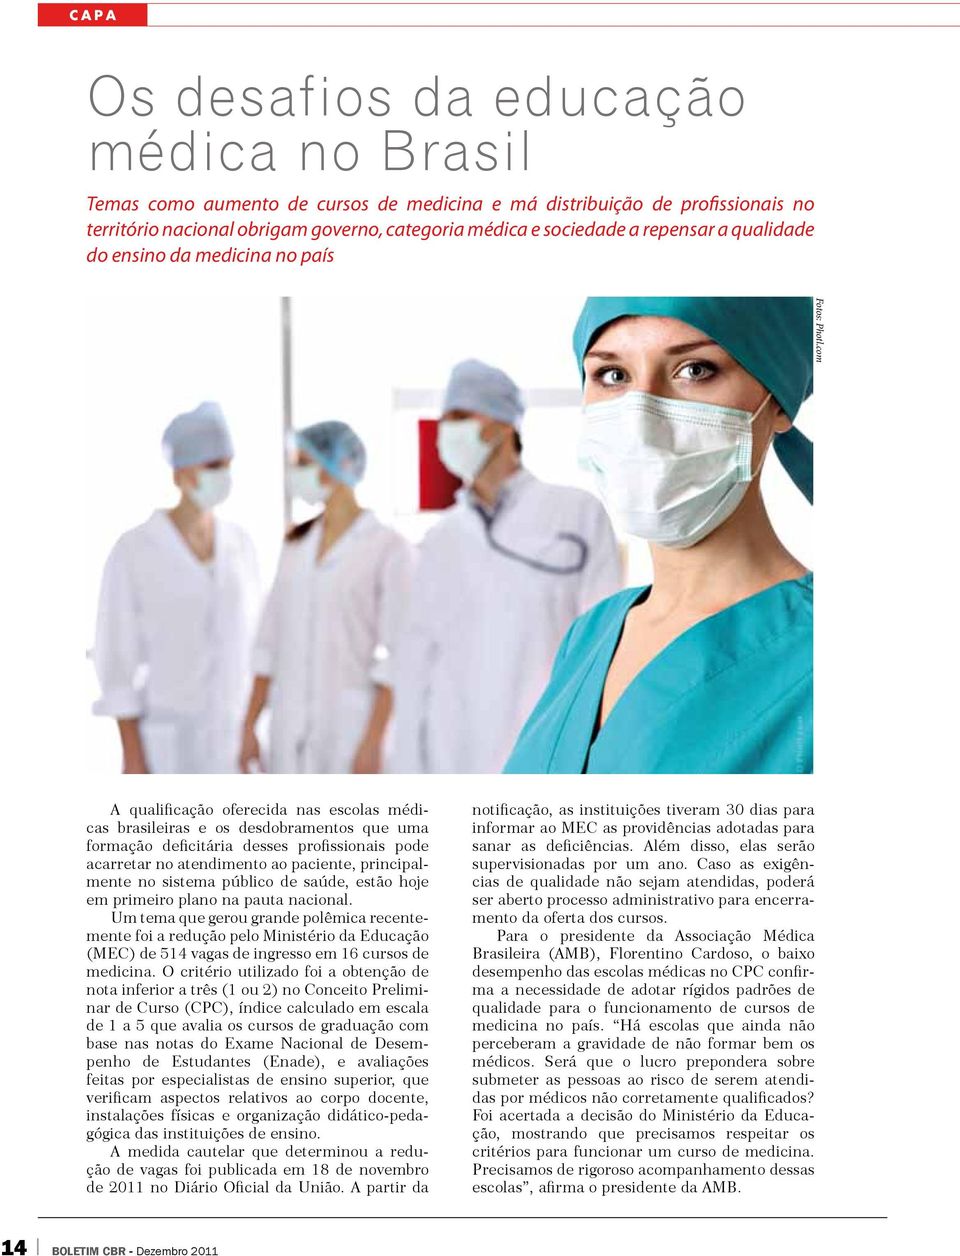 com A qualificação oferecida nas escolas médicas brasileiras e os desdobramentos que uma formação deficitária desses profissionais pode acarretar no atendimento ao paciente, principalmente no sistema